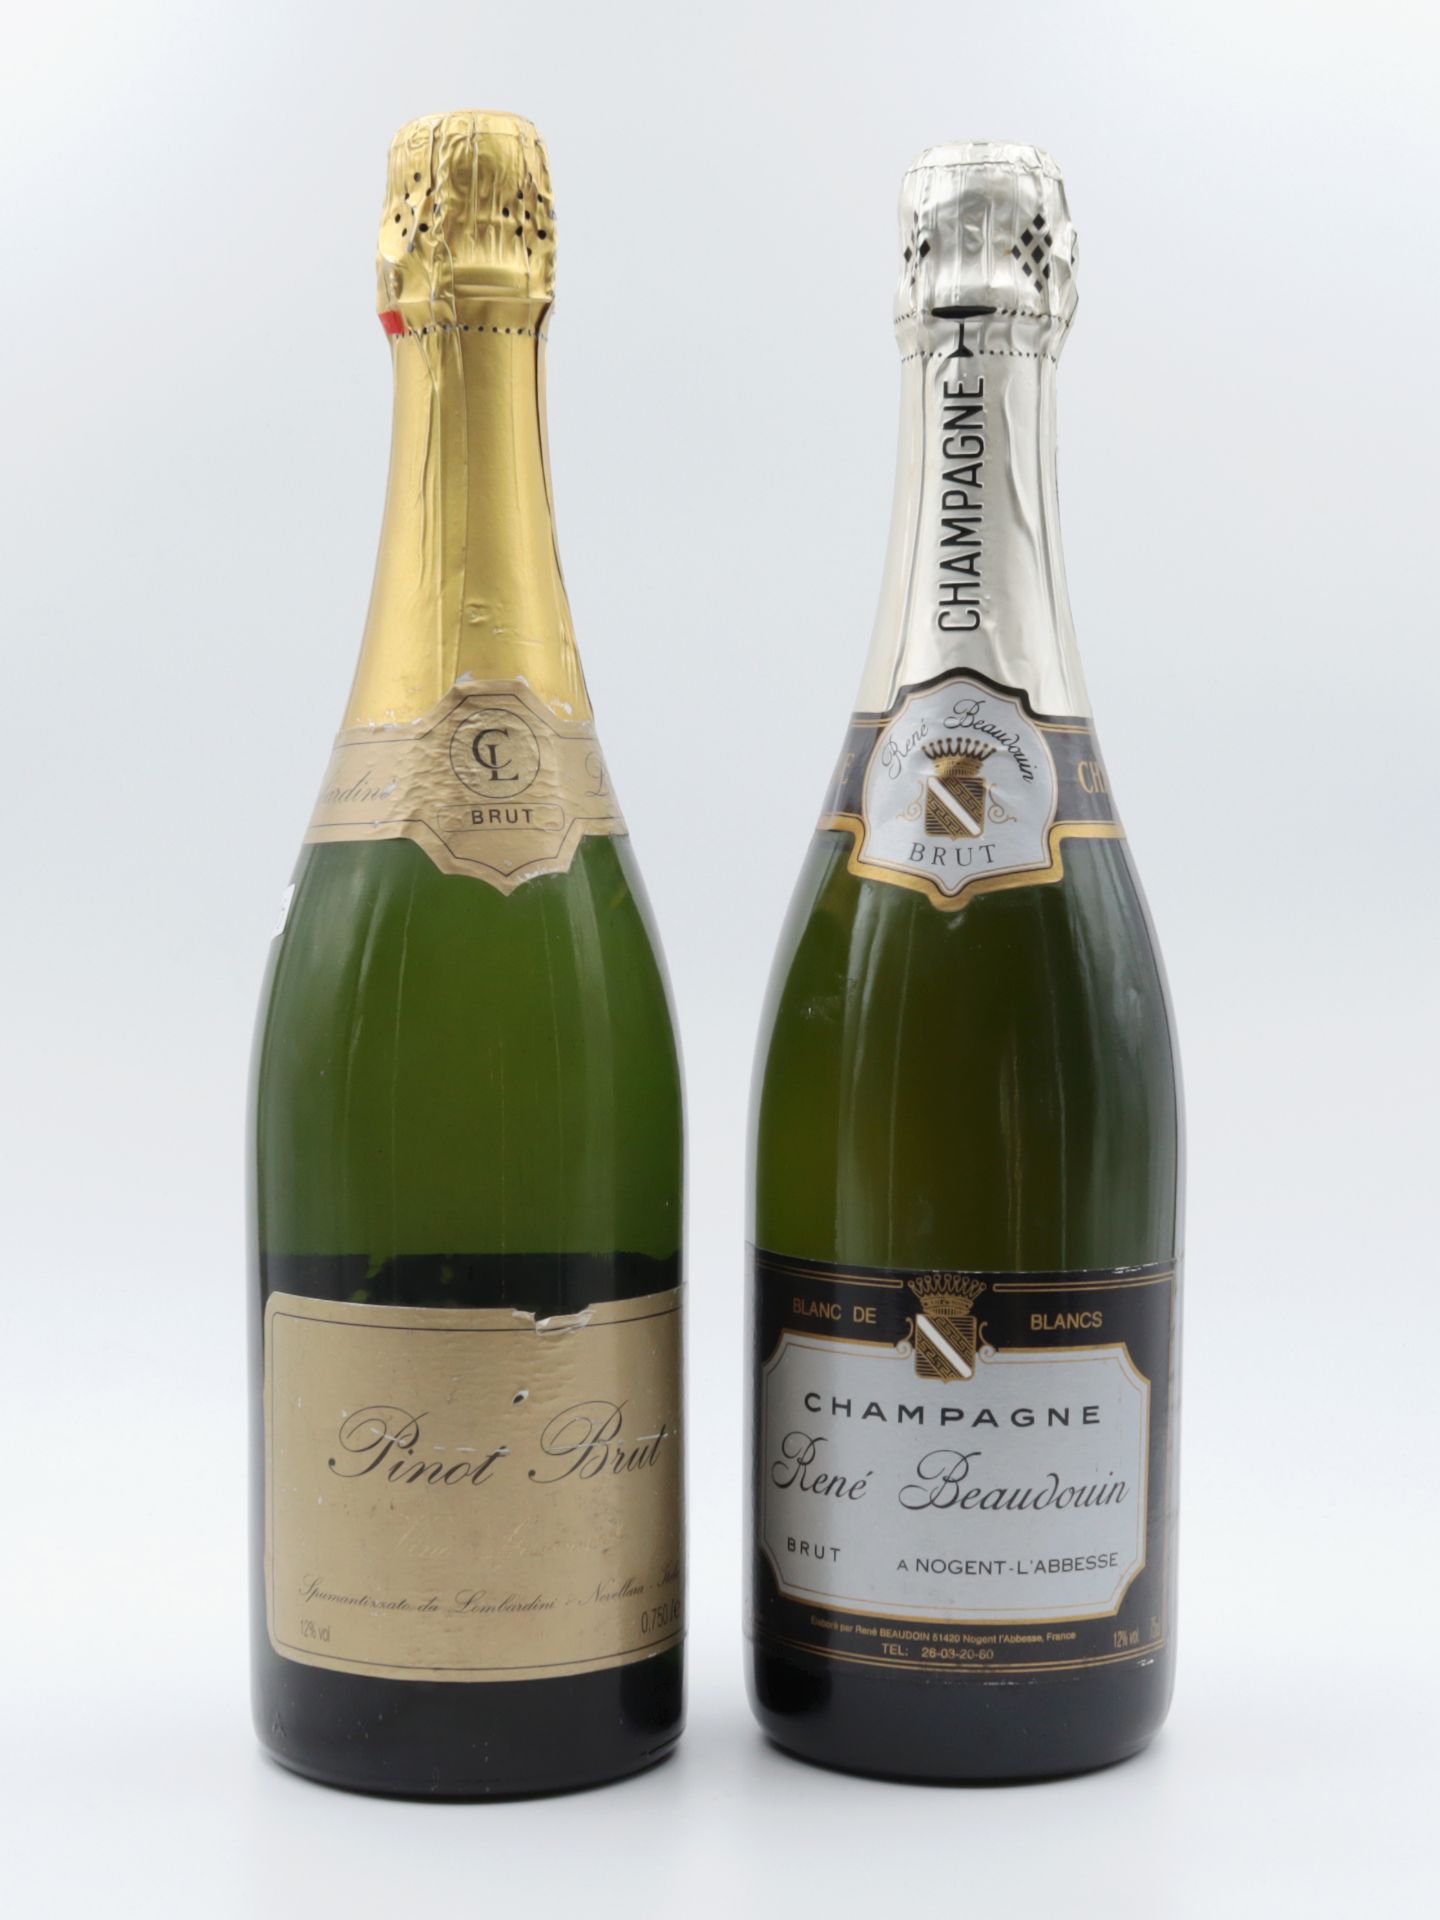 Champagner 1 Fl., René Beaudouin a Nogent-L´Abbesse, Brut, Blanc de blancs, 12 %, niedriger